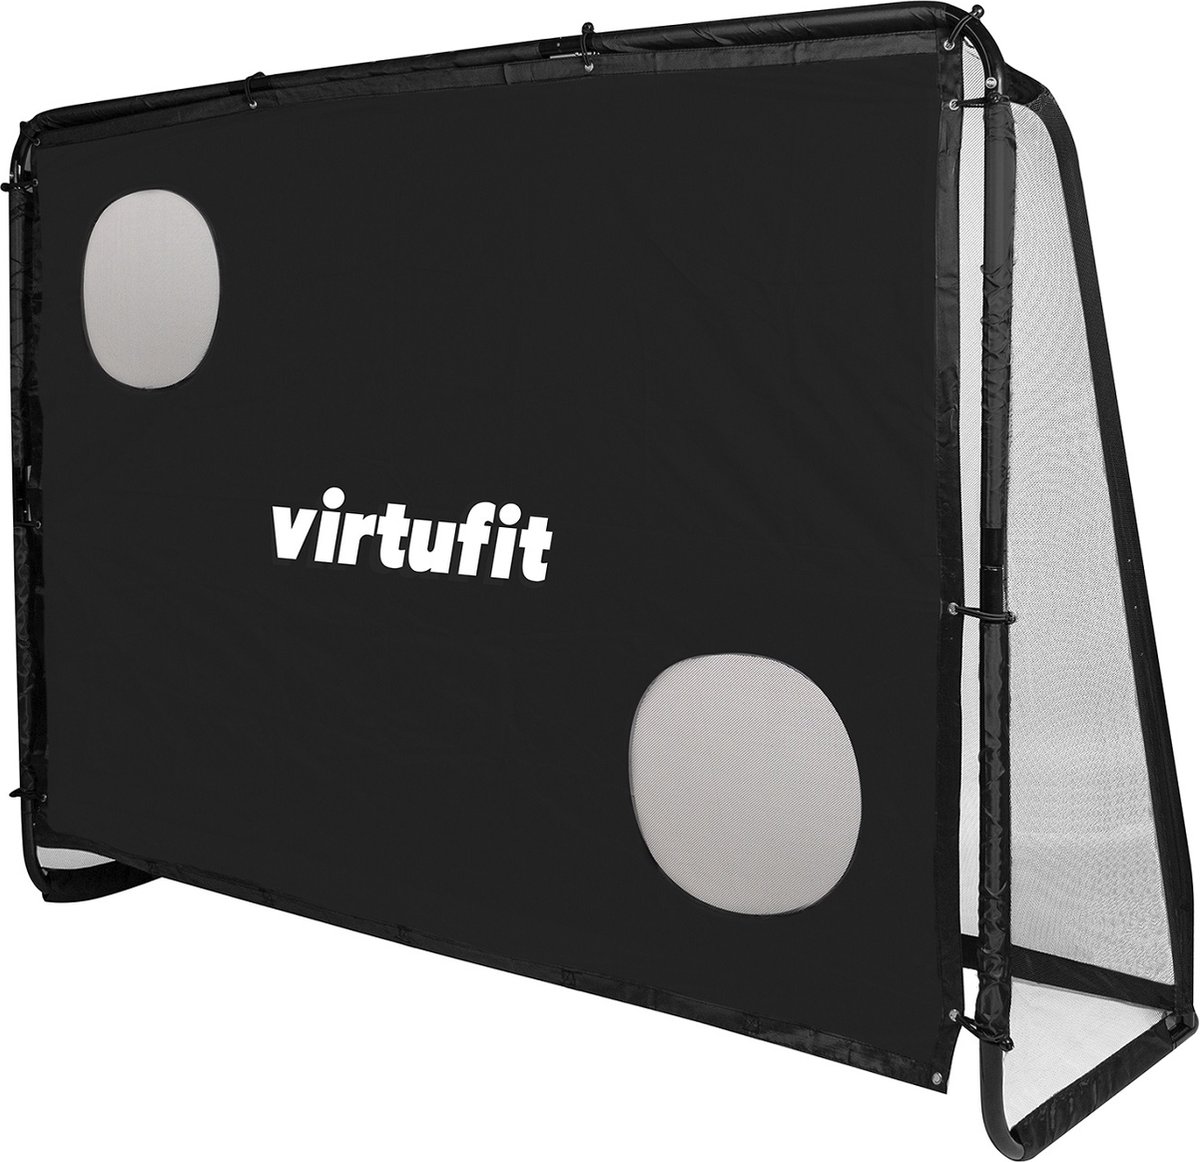 VirtuFit Voetbaldoel Pro met Doelwand - Voetbal Goal - 220 x 170 x 85 cm - Virtufit